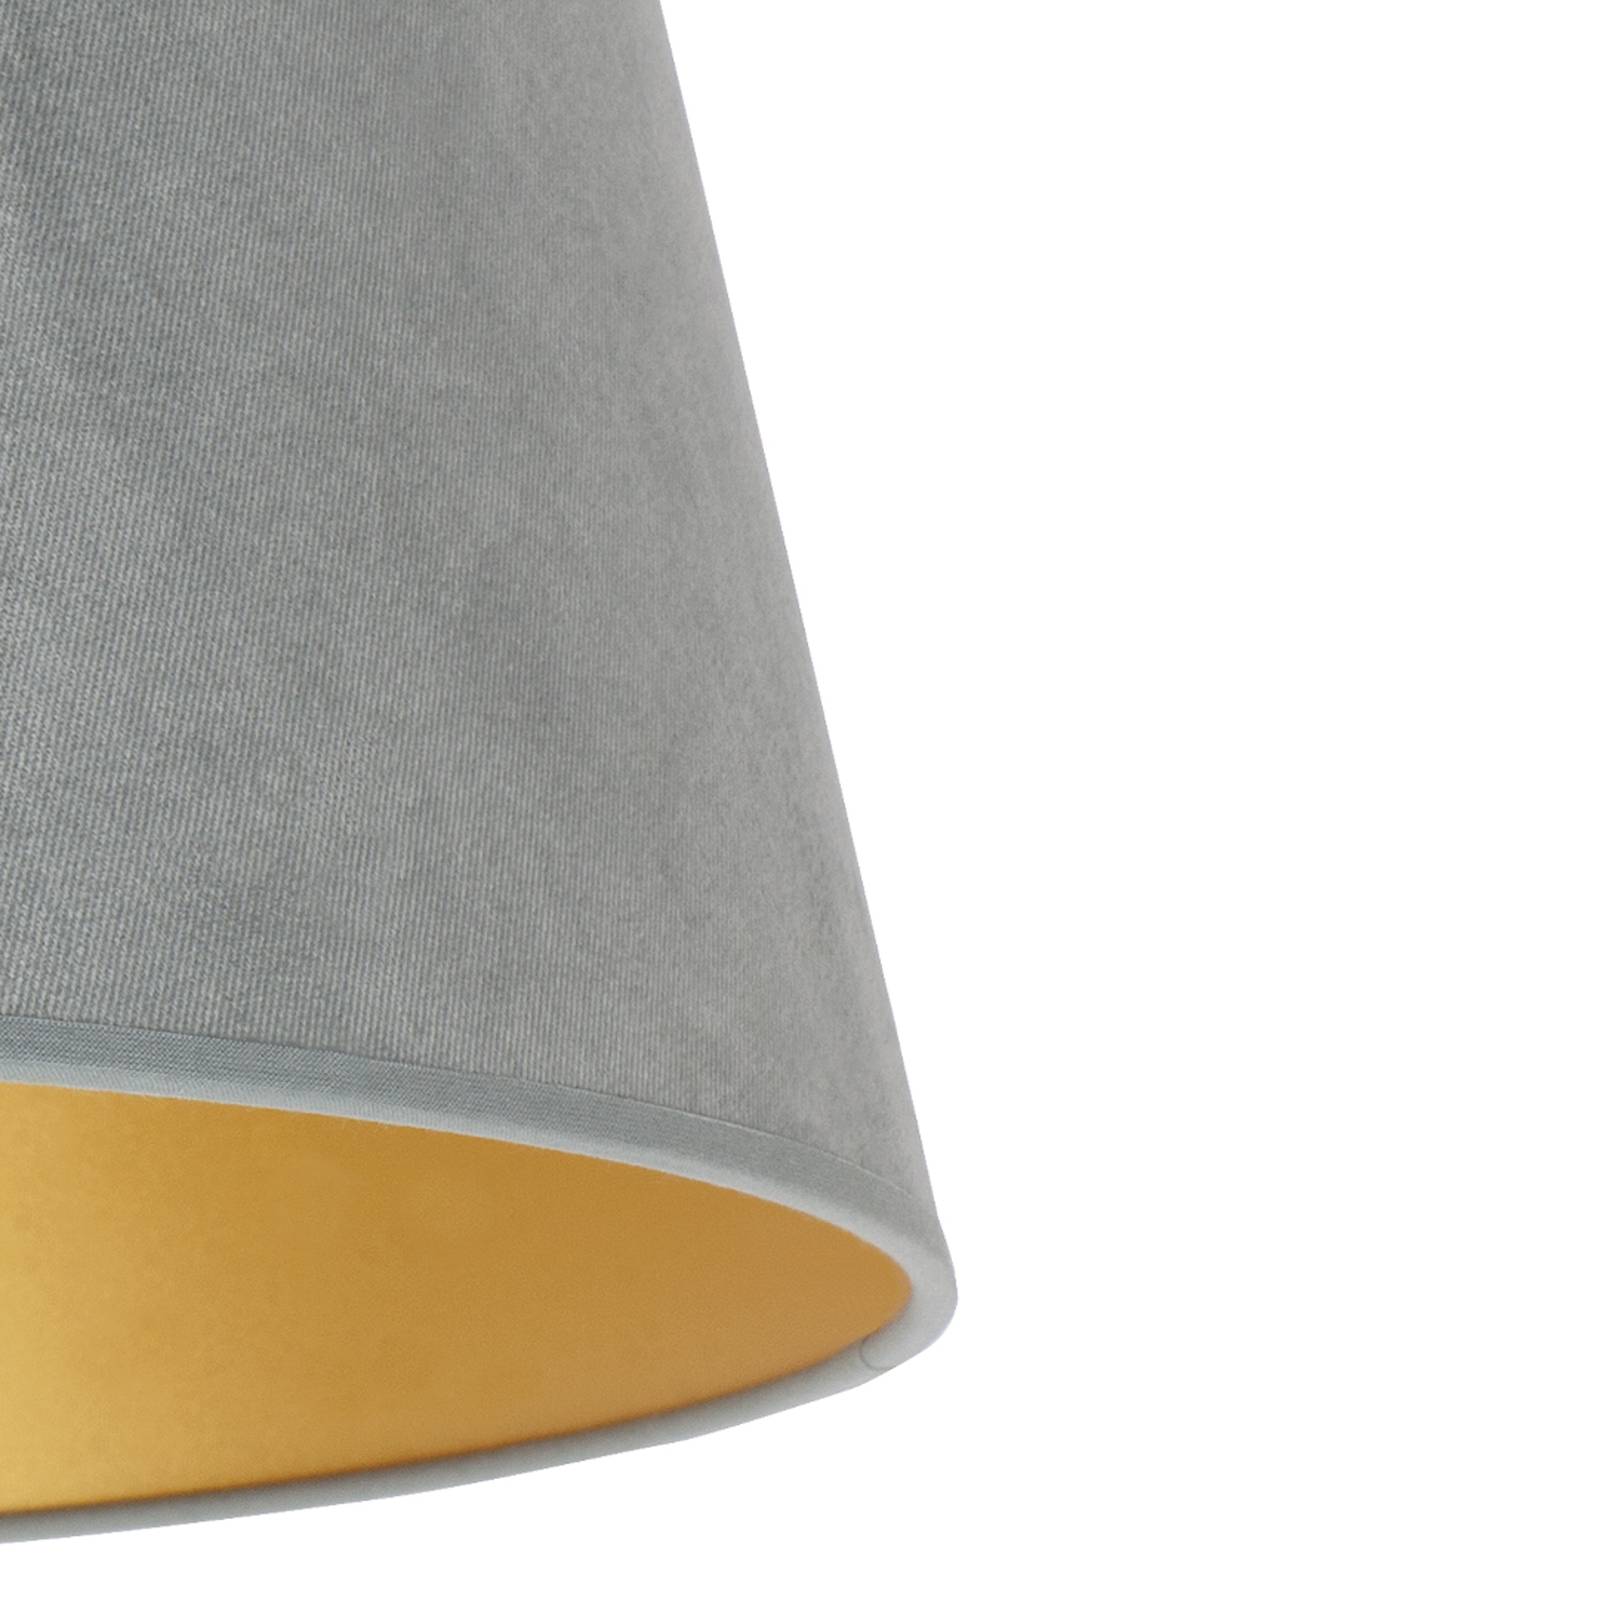 Cone lámpaernyő 25,5 cm magas, mentazöld/arany